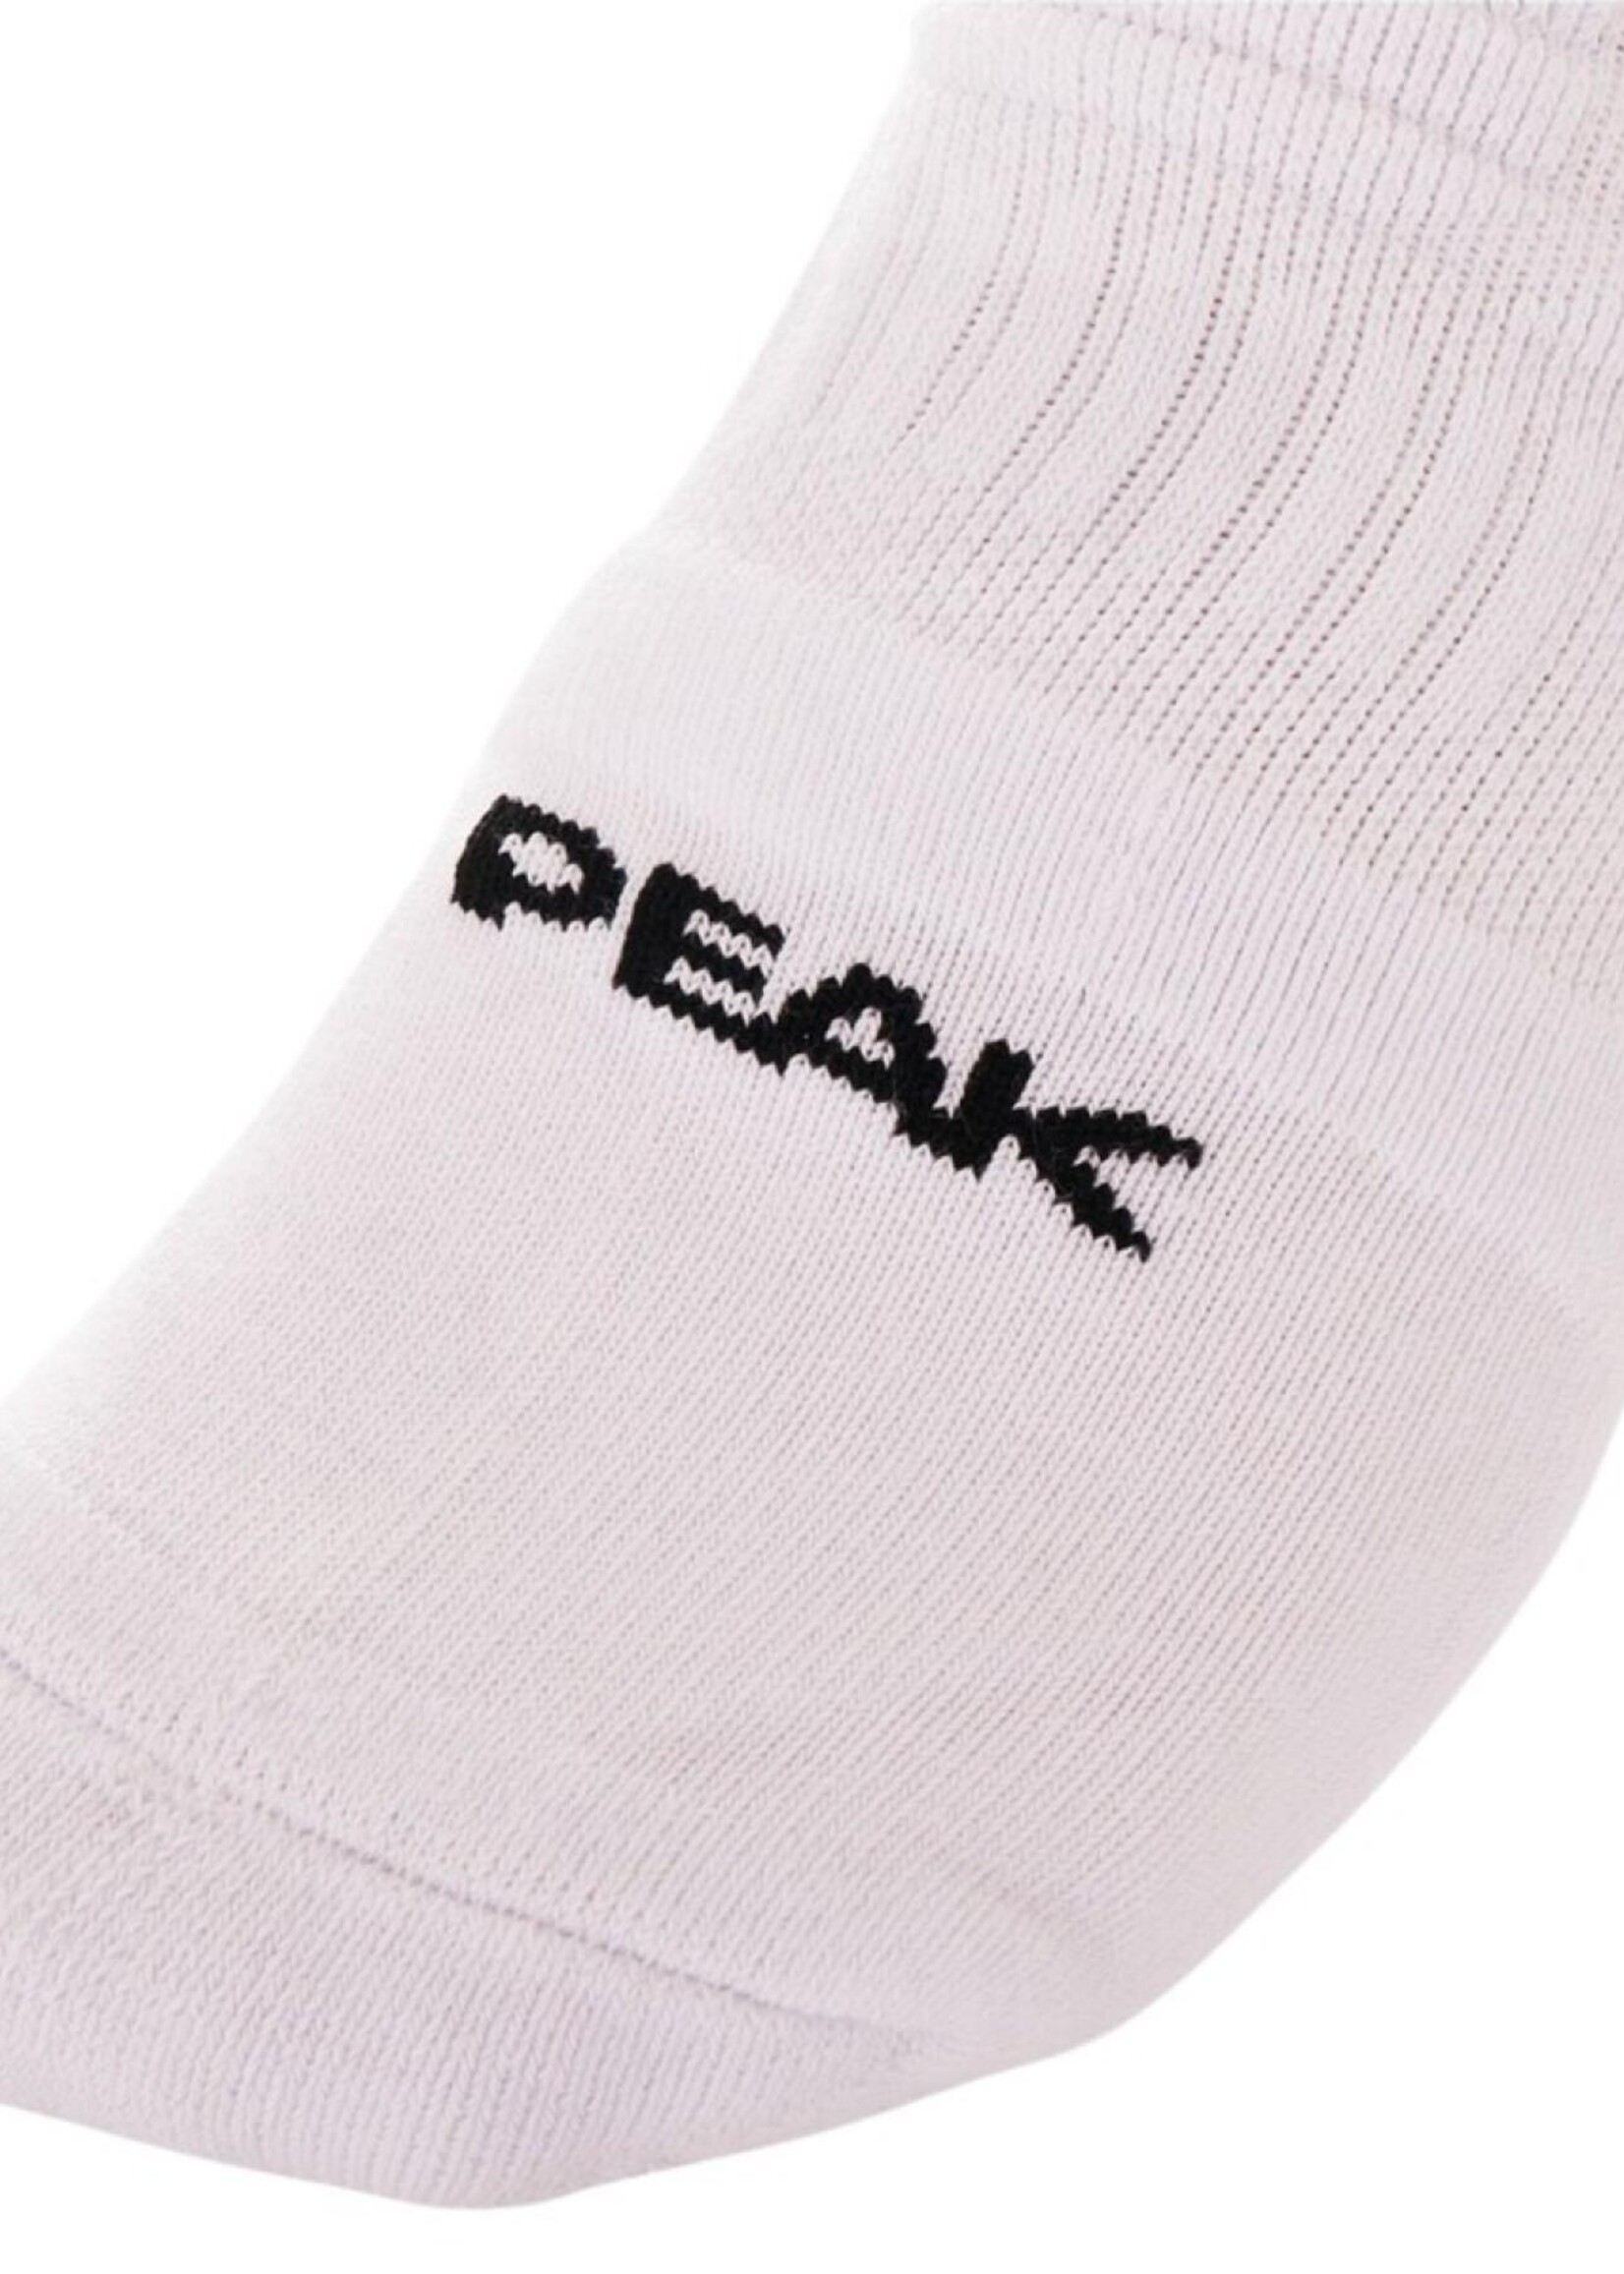 Peak Peak Socks Elite Blanc